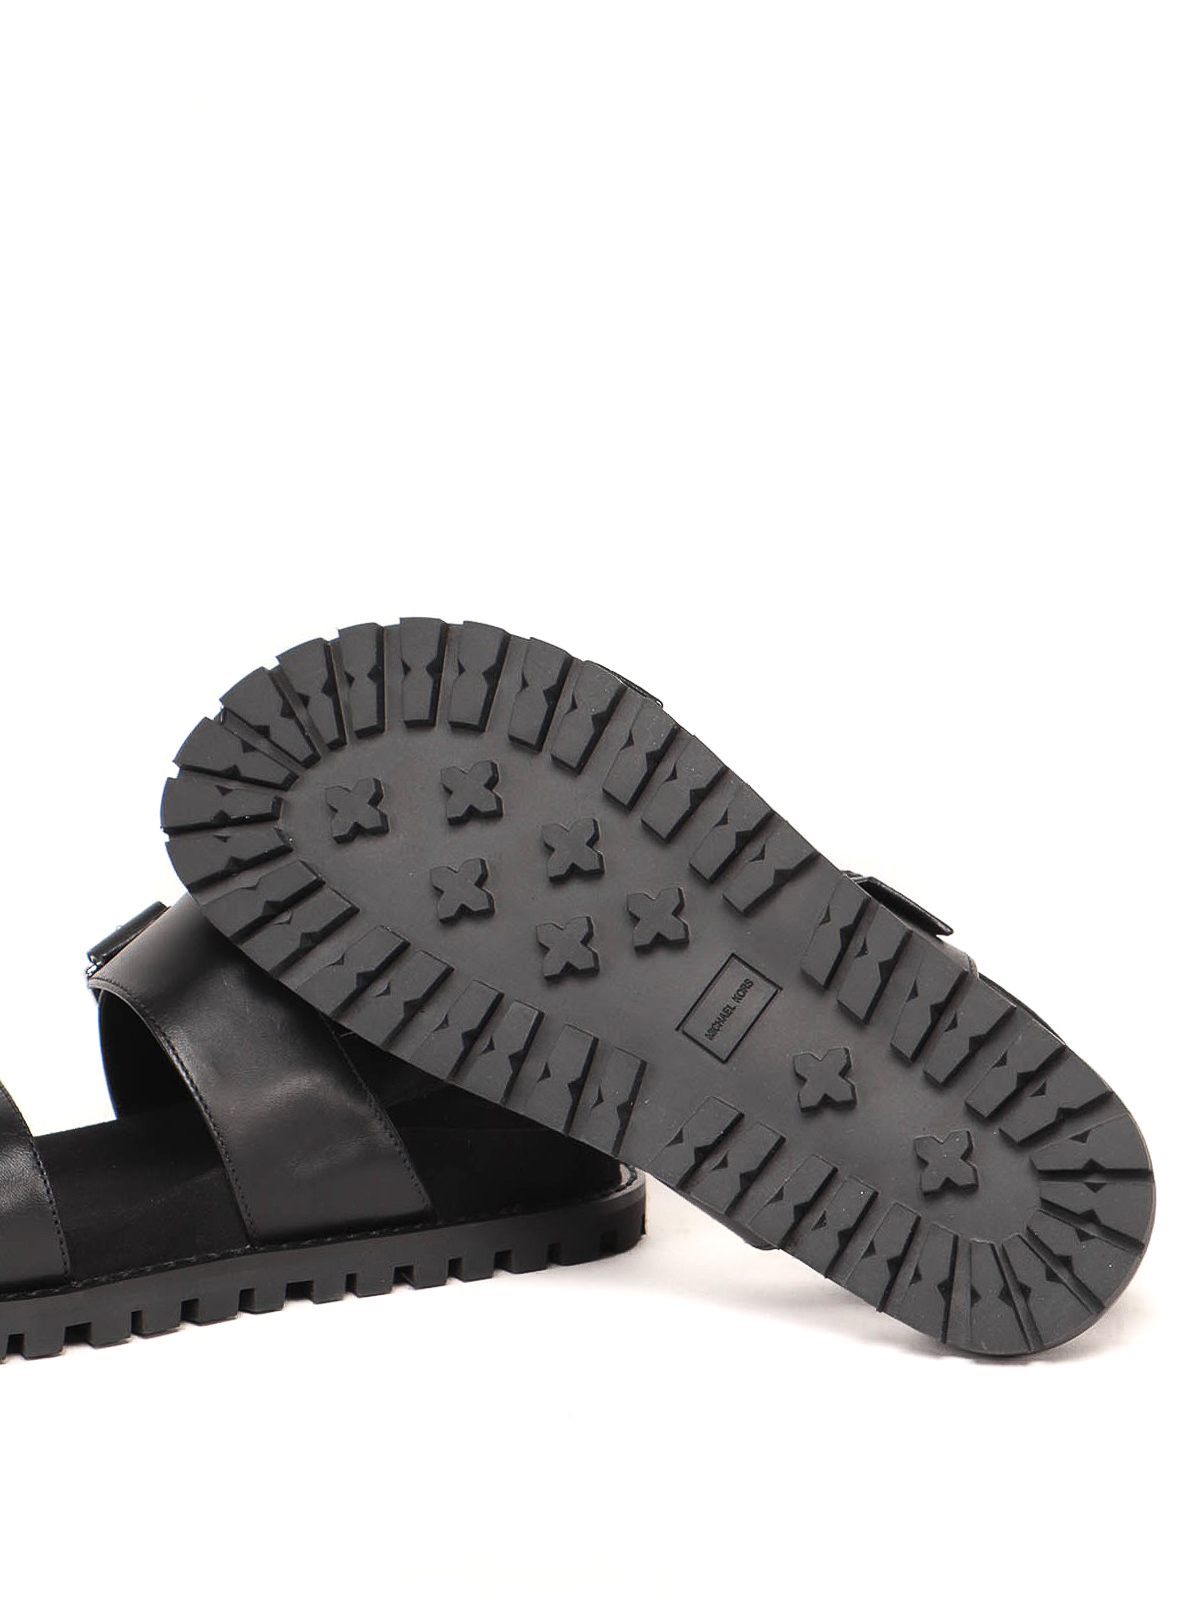 Sandals Michael Kors Judd black sandal - 40T1JUFA2L001